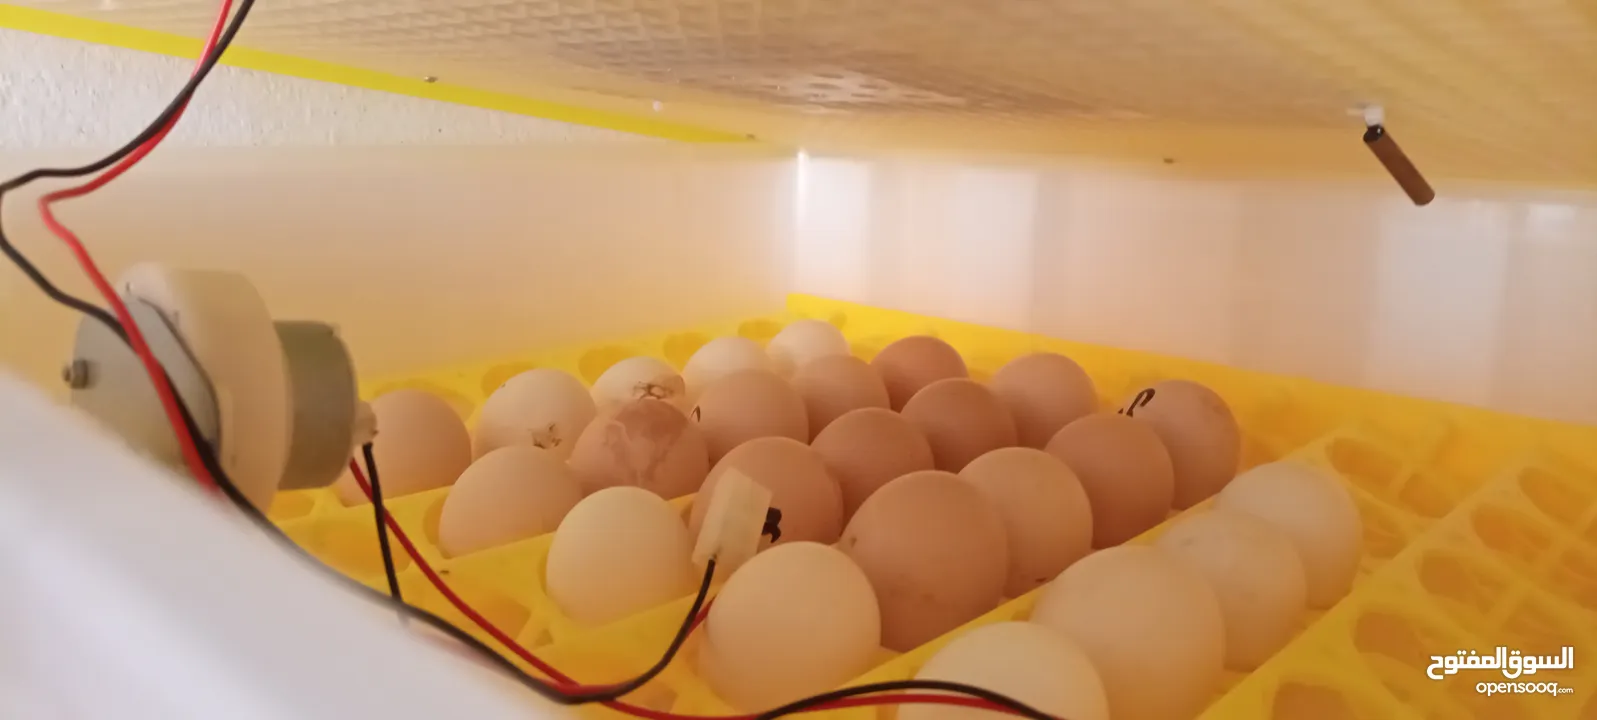 فقاسة 56 بيضة للبيع...... اقرا الوصف